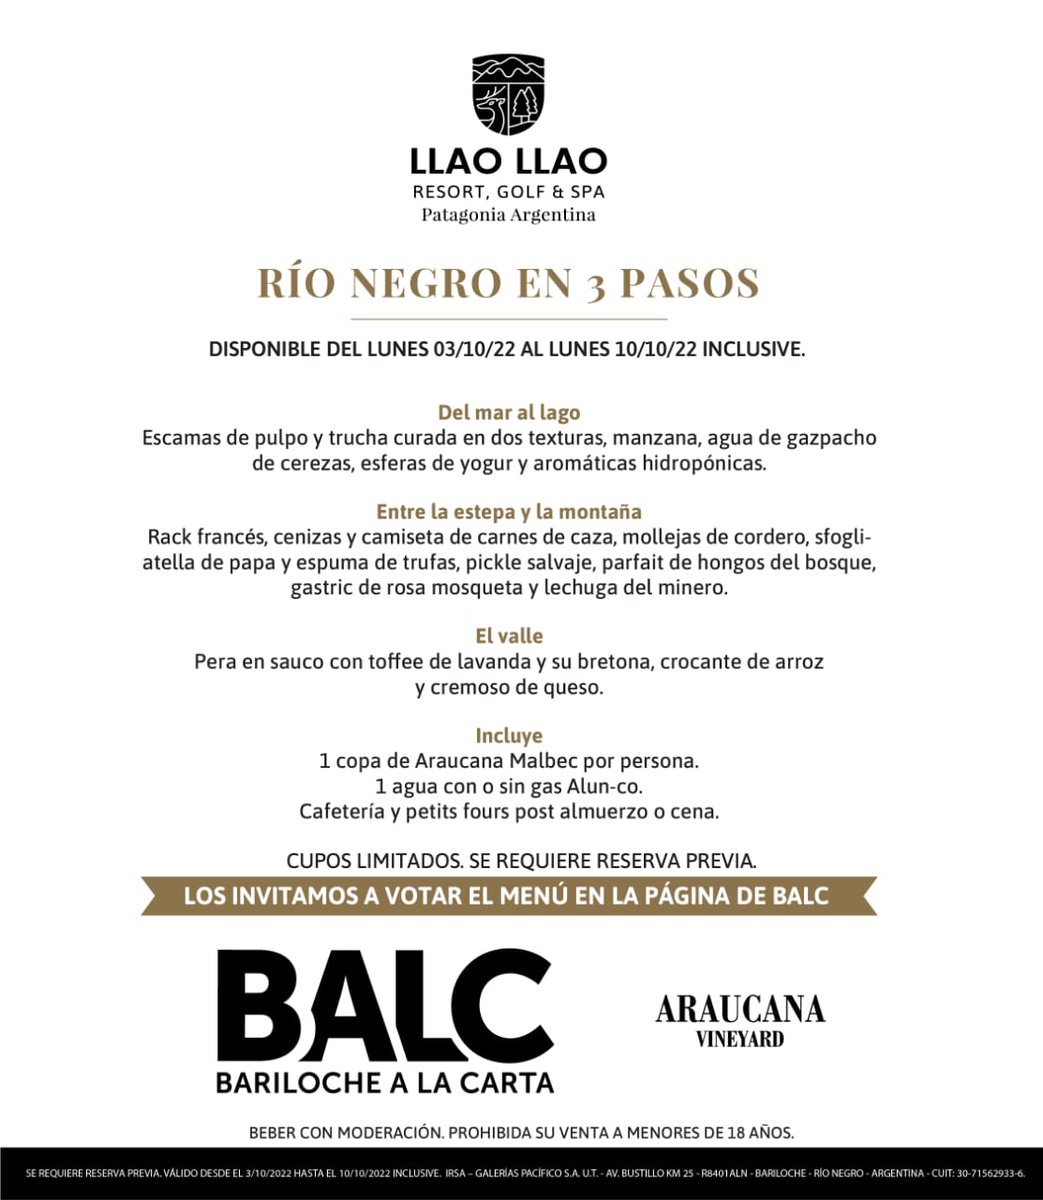 Del 3 al 10 de Octubre nos sumamos a la nueva edición de Bariloche A La Carta, la mejor manera de recorrer la Ruta Gastronómica Patagónica!

#BALC #BarilocheALaCarta #foodies #foodiesweek